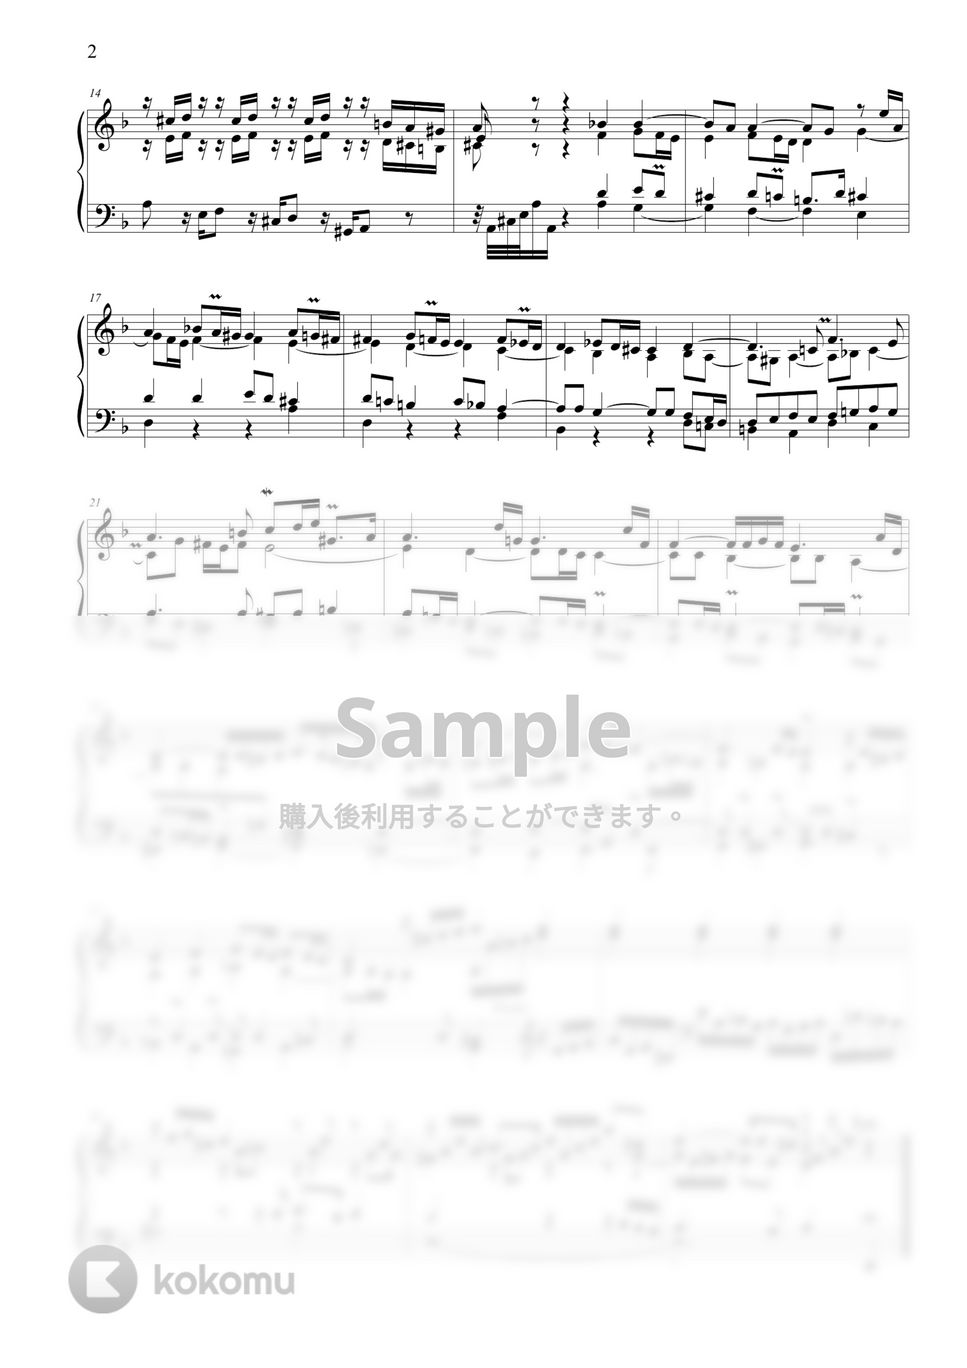 バッハ - トッカータ ニ短調 BWV 913 by ココミュオリジナル